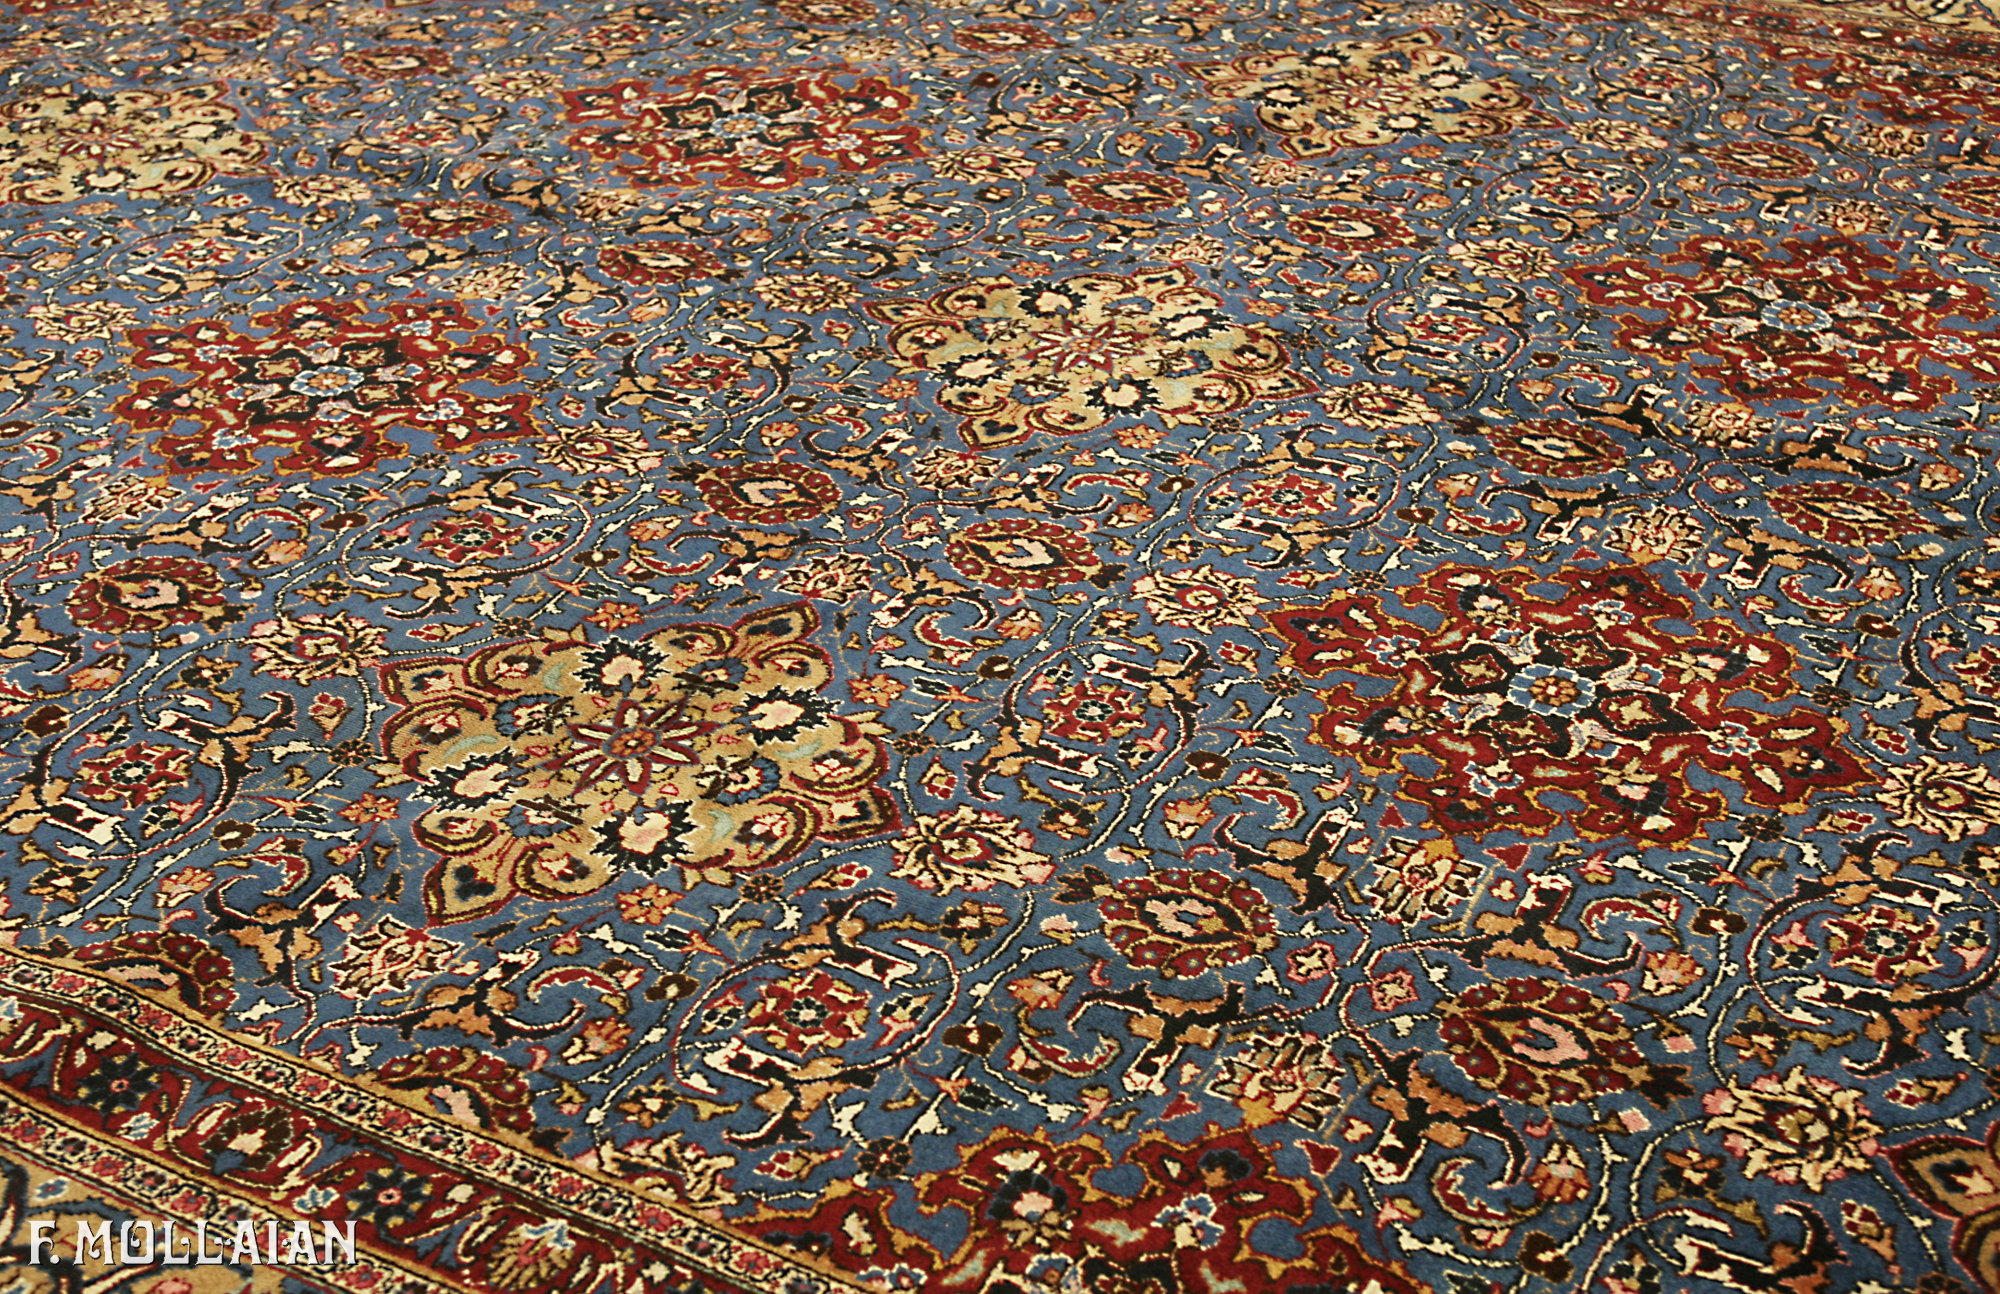 Teppich Persischer Semi-Antiker Mashad n°:51556854